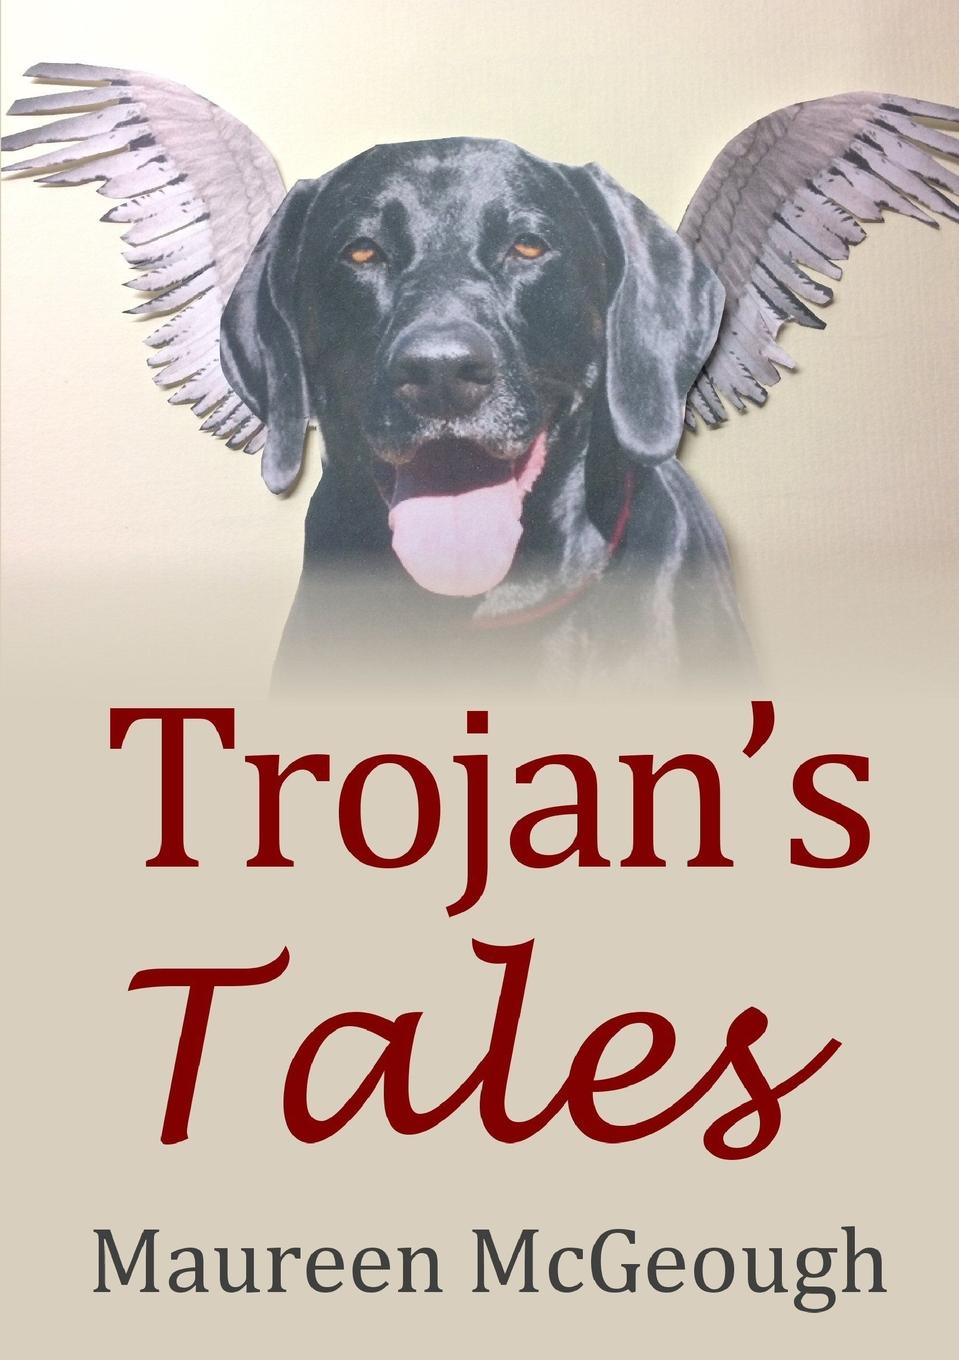 Trojan.s Tales